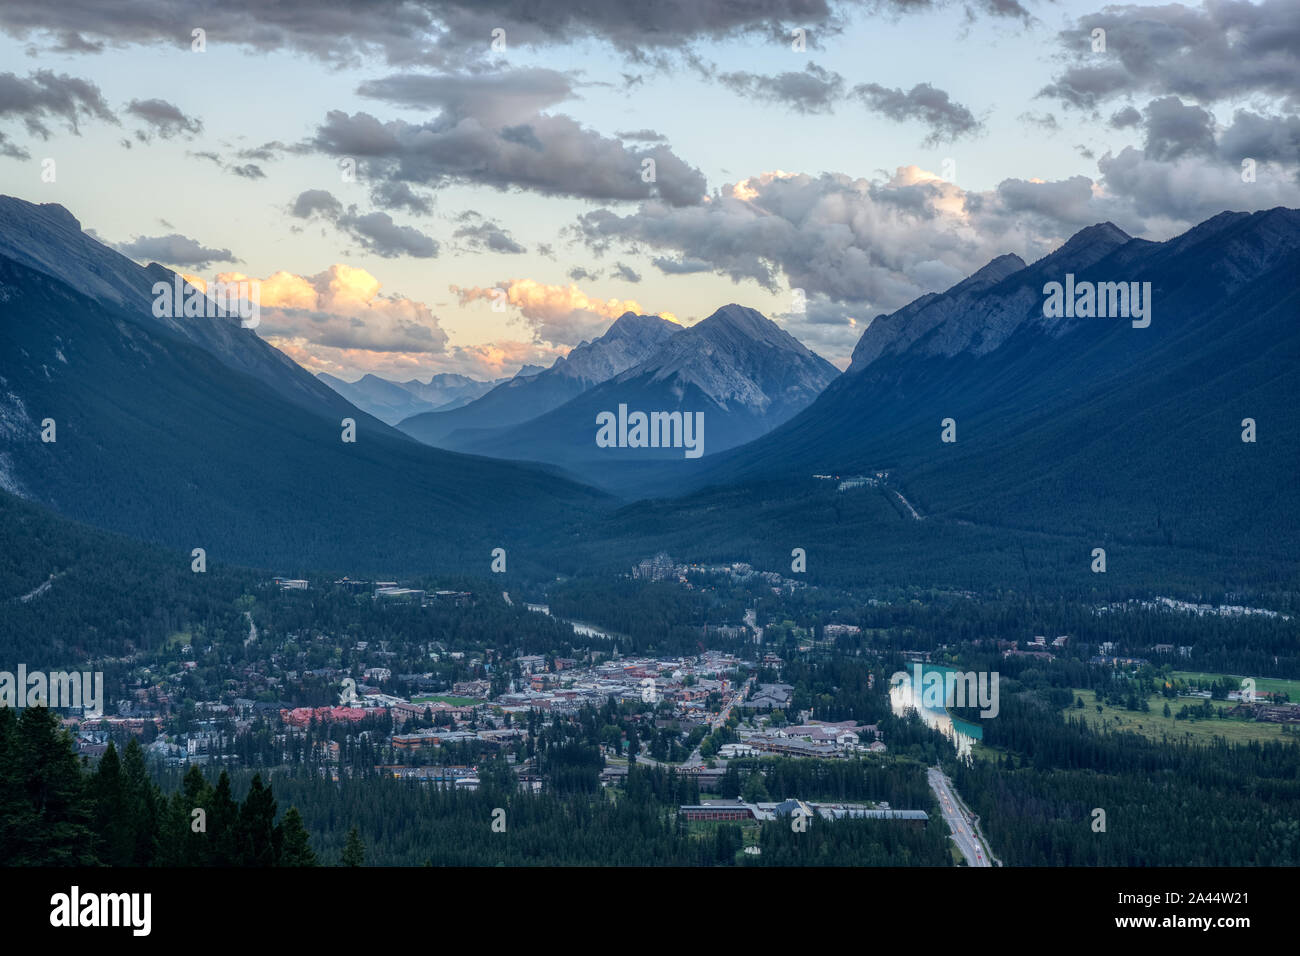 Belle vue de la ville de villégiature Banff Mount Rundle, Goatview avec PIC, et la montagne de soufre s'élevant au-dessus de la ville de Banff, de Vue, Mont Banque D'Images